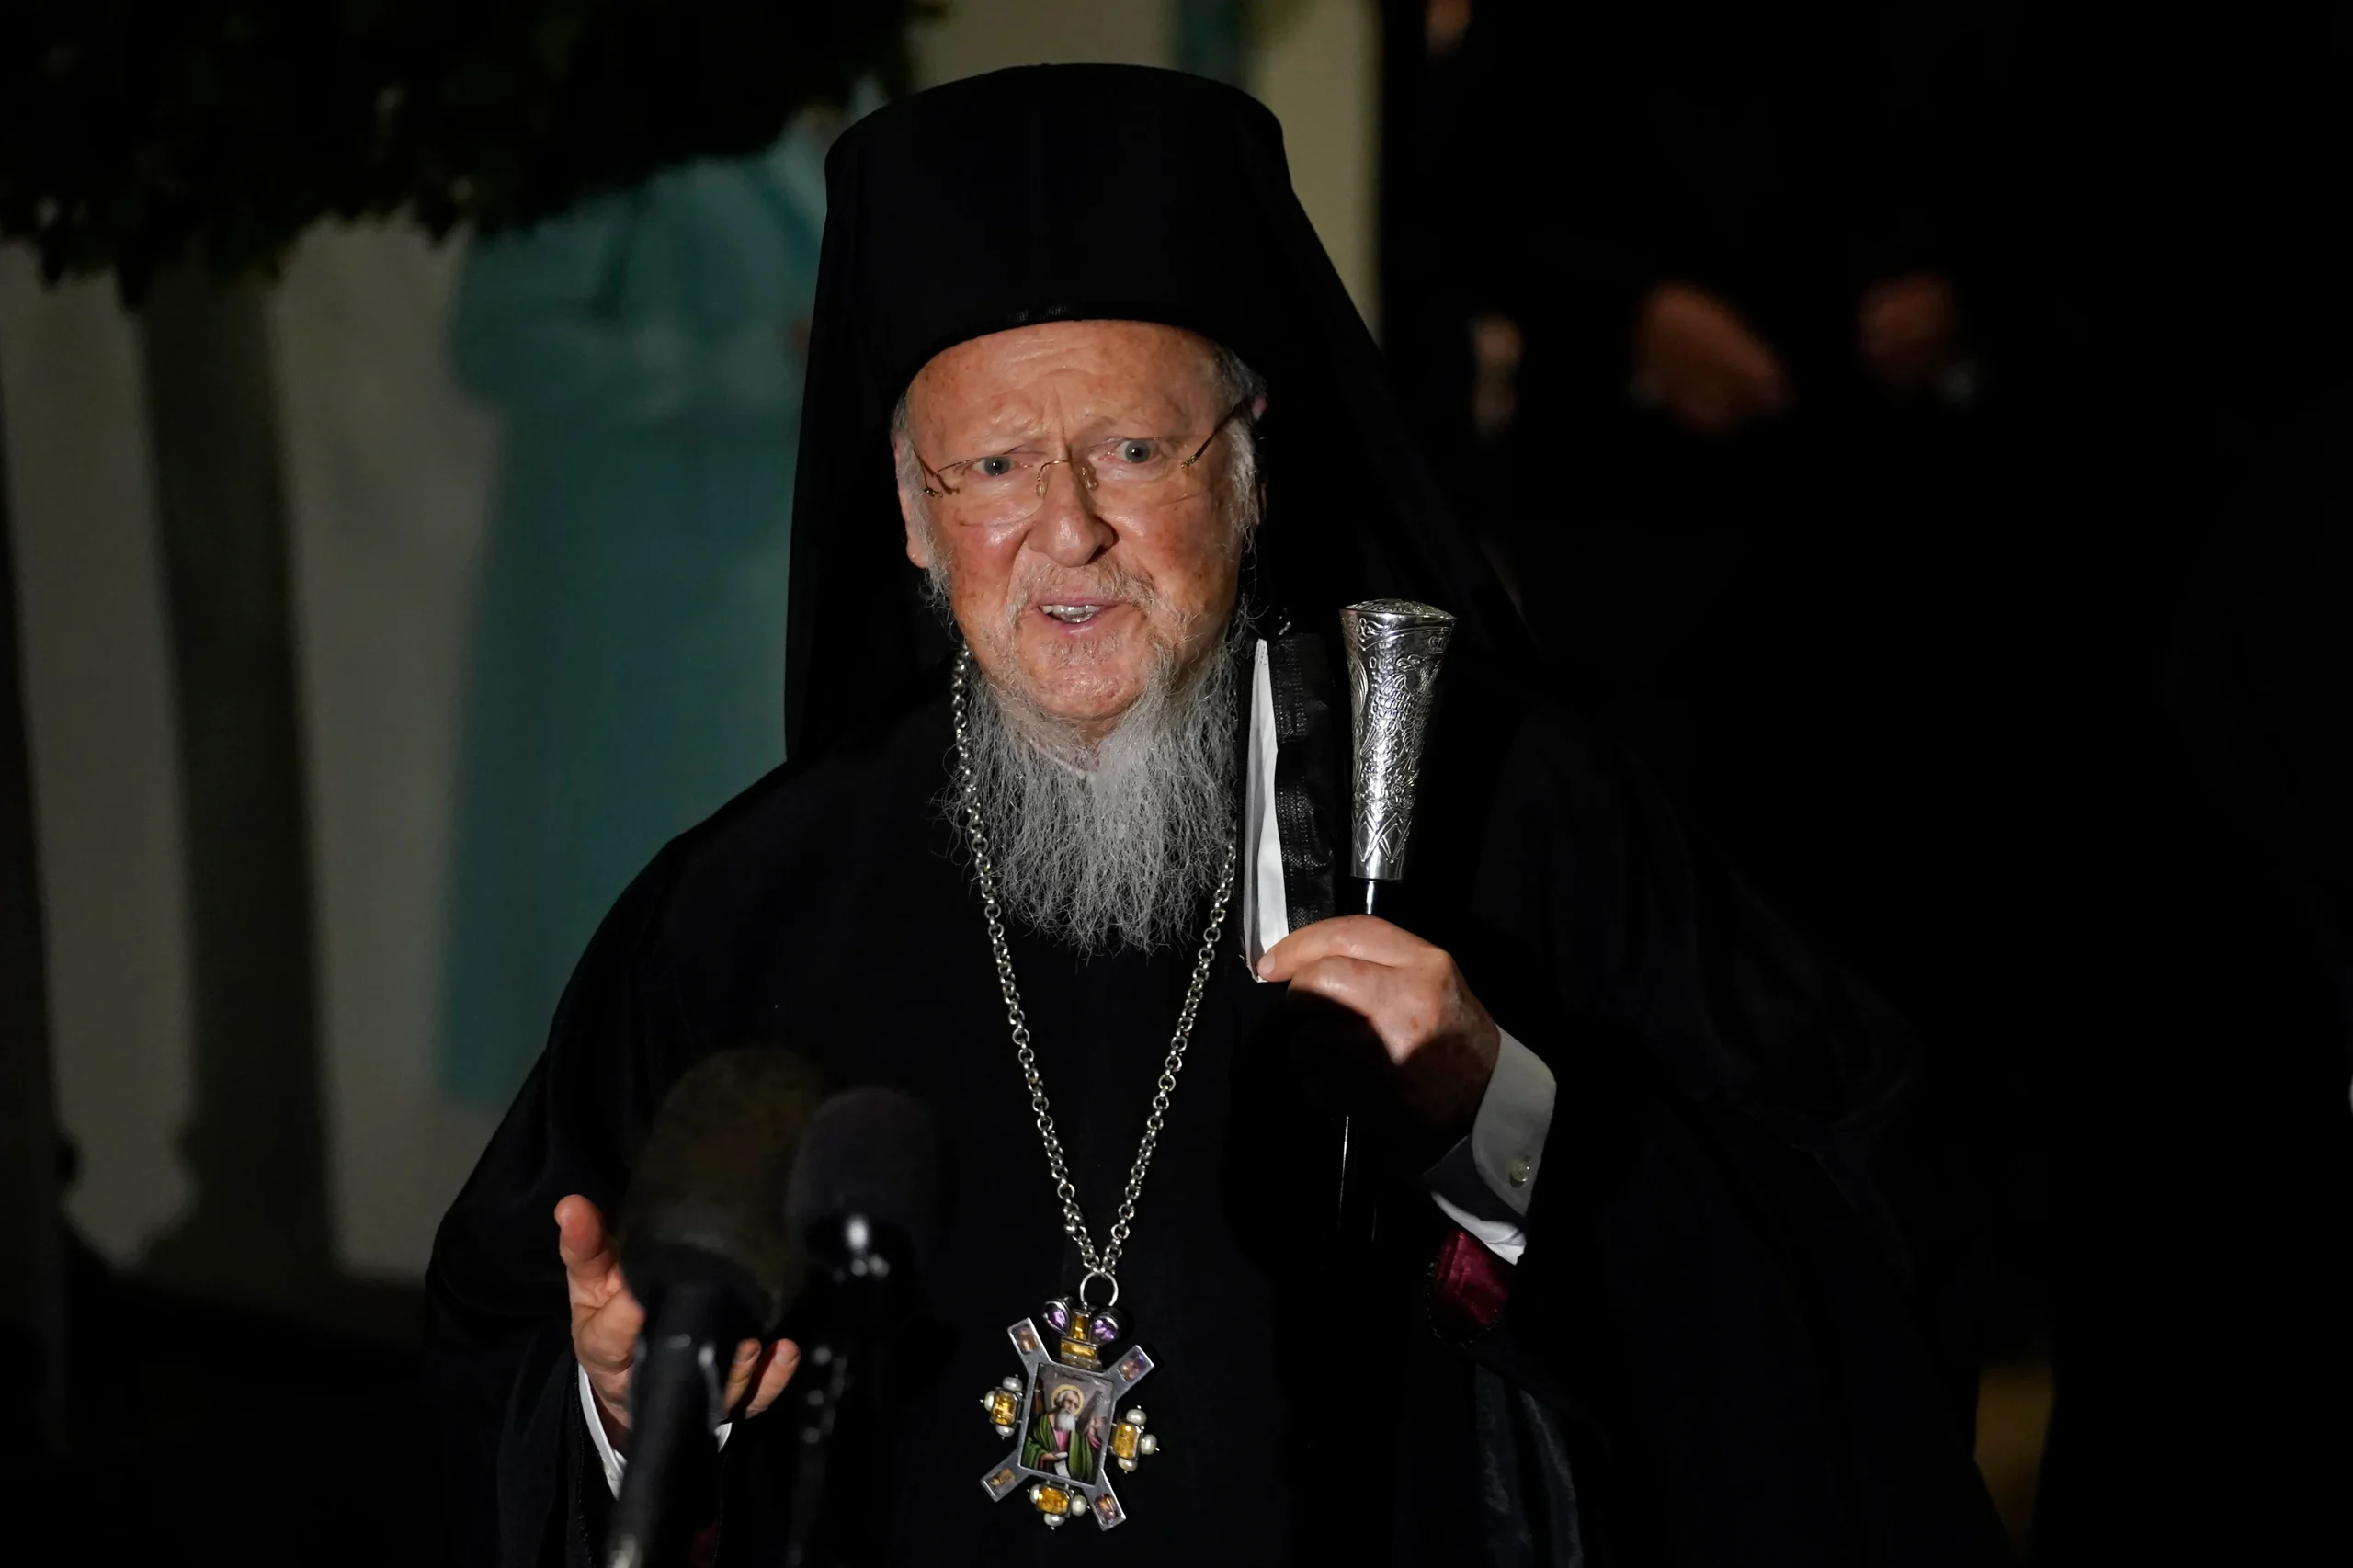 Μήνυμα υπέρ της ειρήνης έστειλε ο Οικουμενικός Πατριάρχης Βαρθολομαίος από το Άγιο Όρος